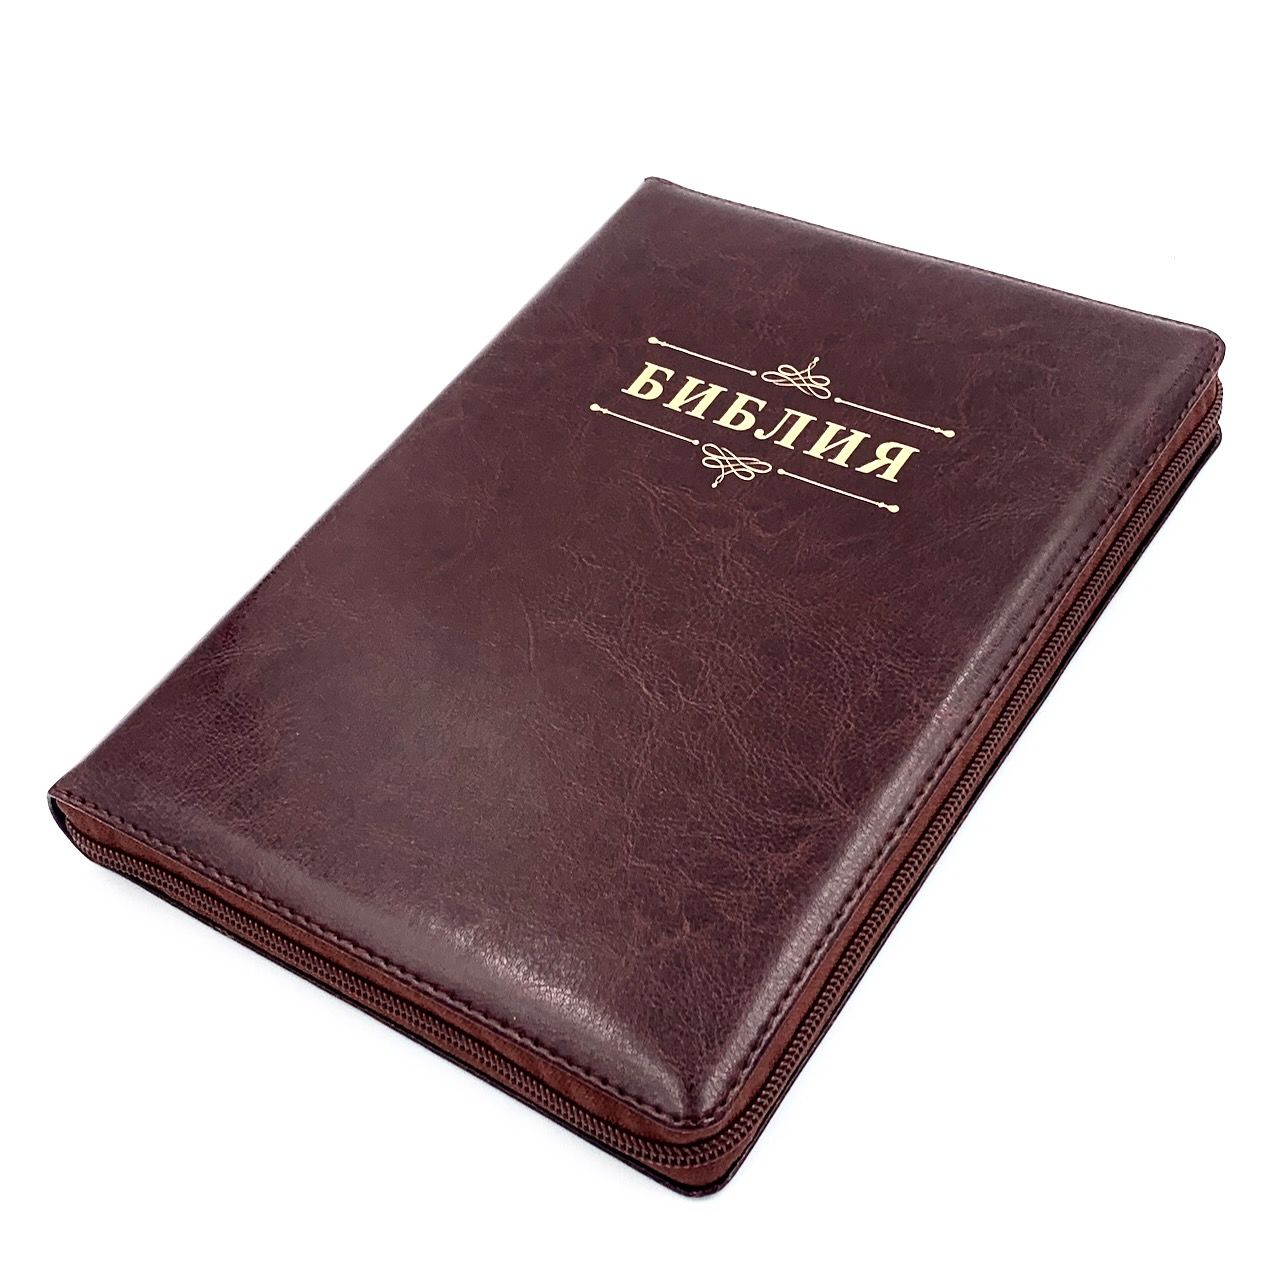 Библия 076zti код 23076-36,  дизайн "Библия с вензелем", переплет из искусственной кожи на молнии с индексами, цвет темно-коричневый, размер 180x243 мм